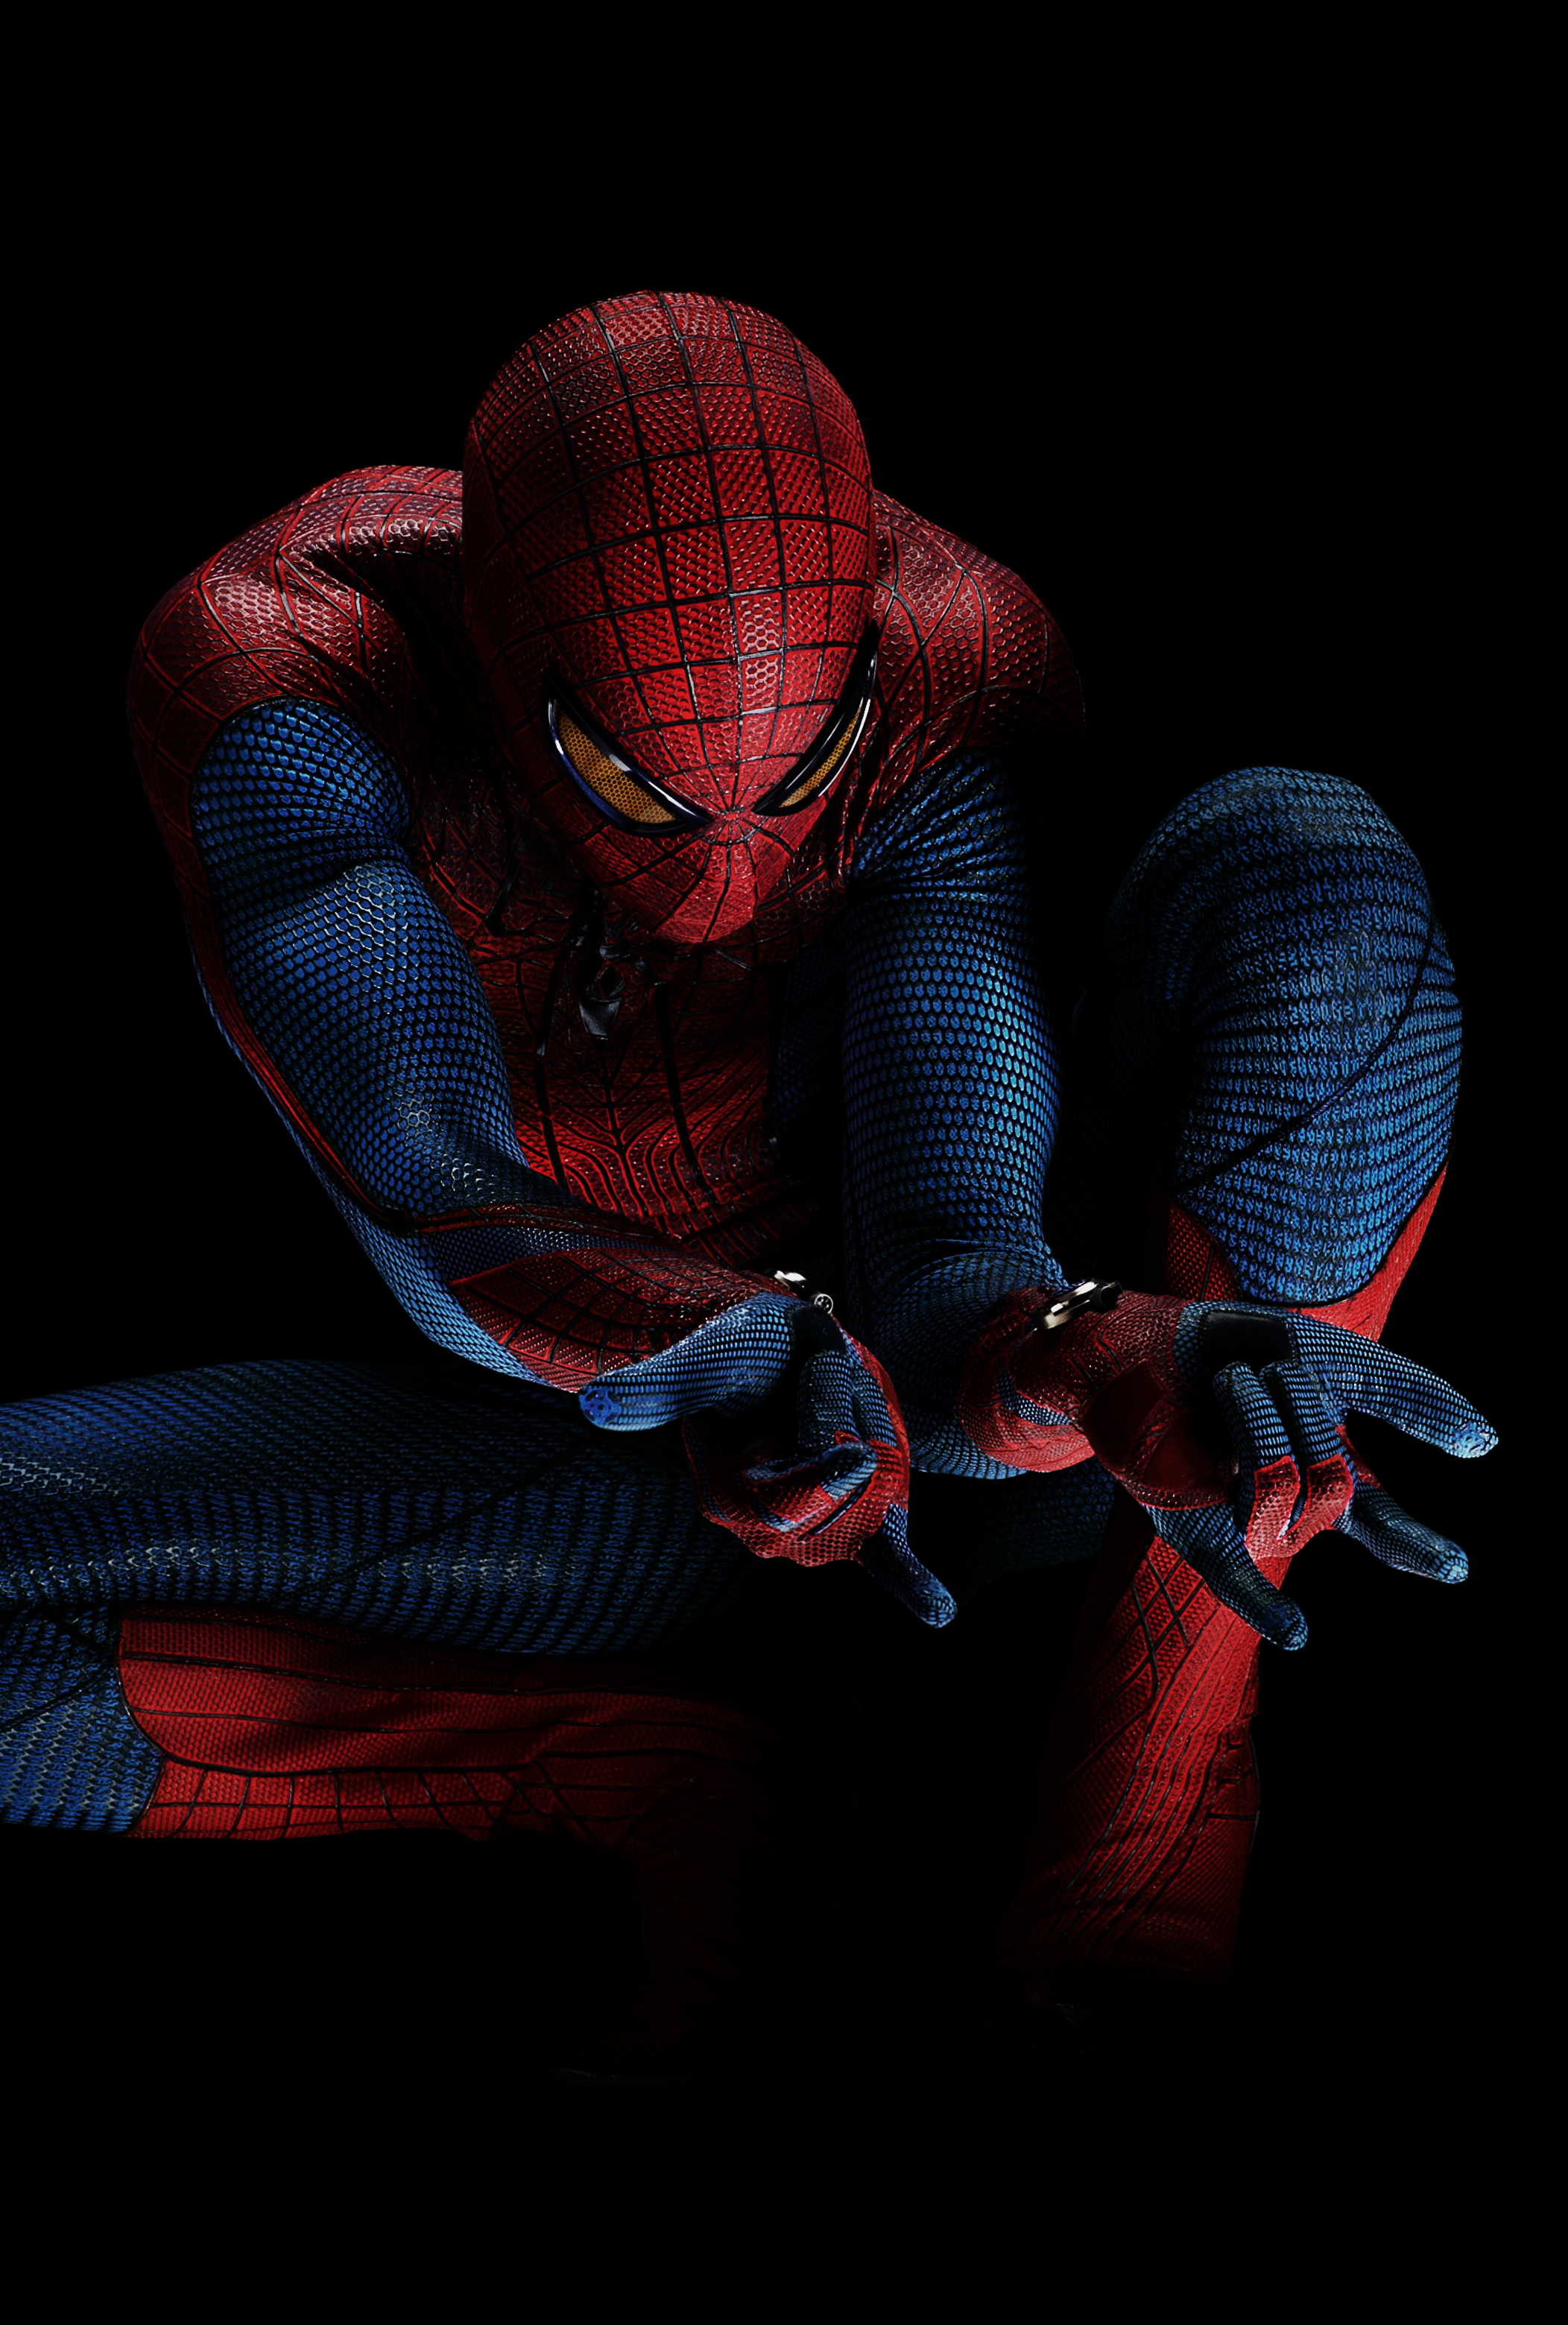 amazing-spider-man.jpg